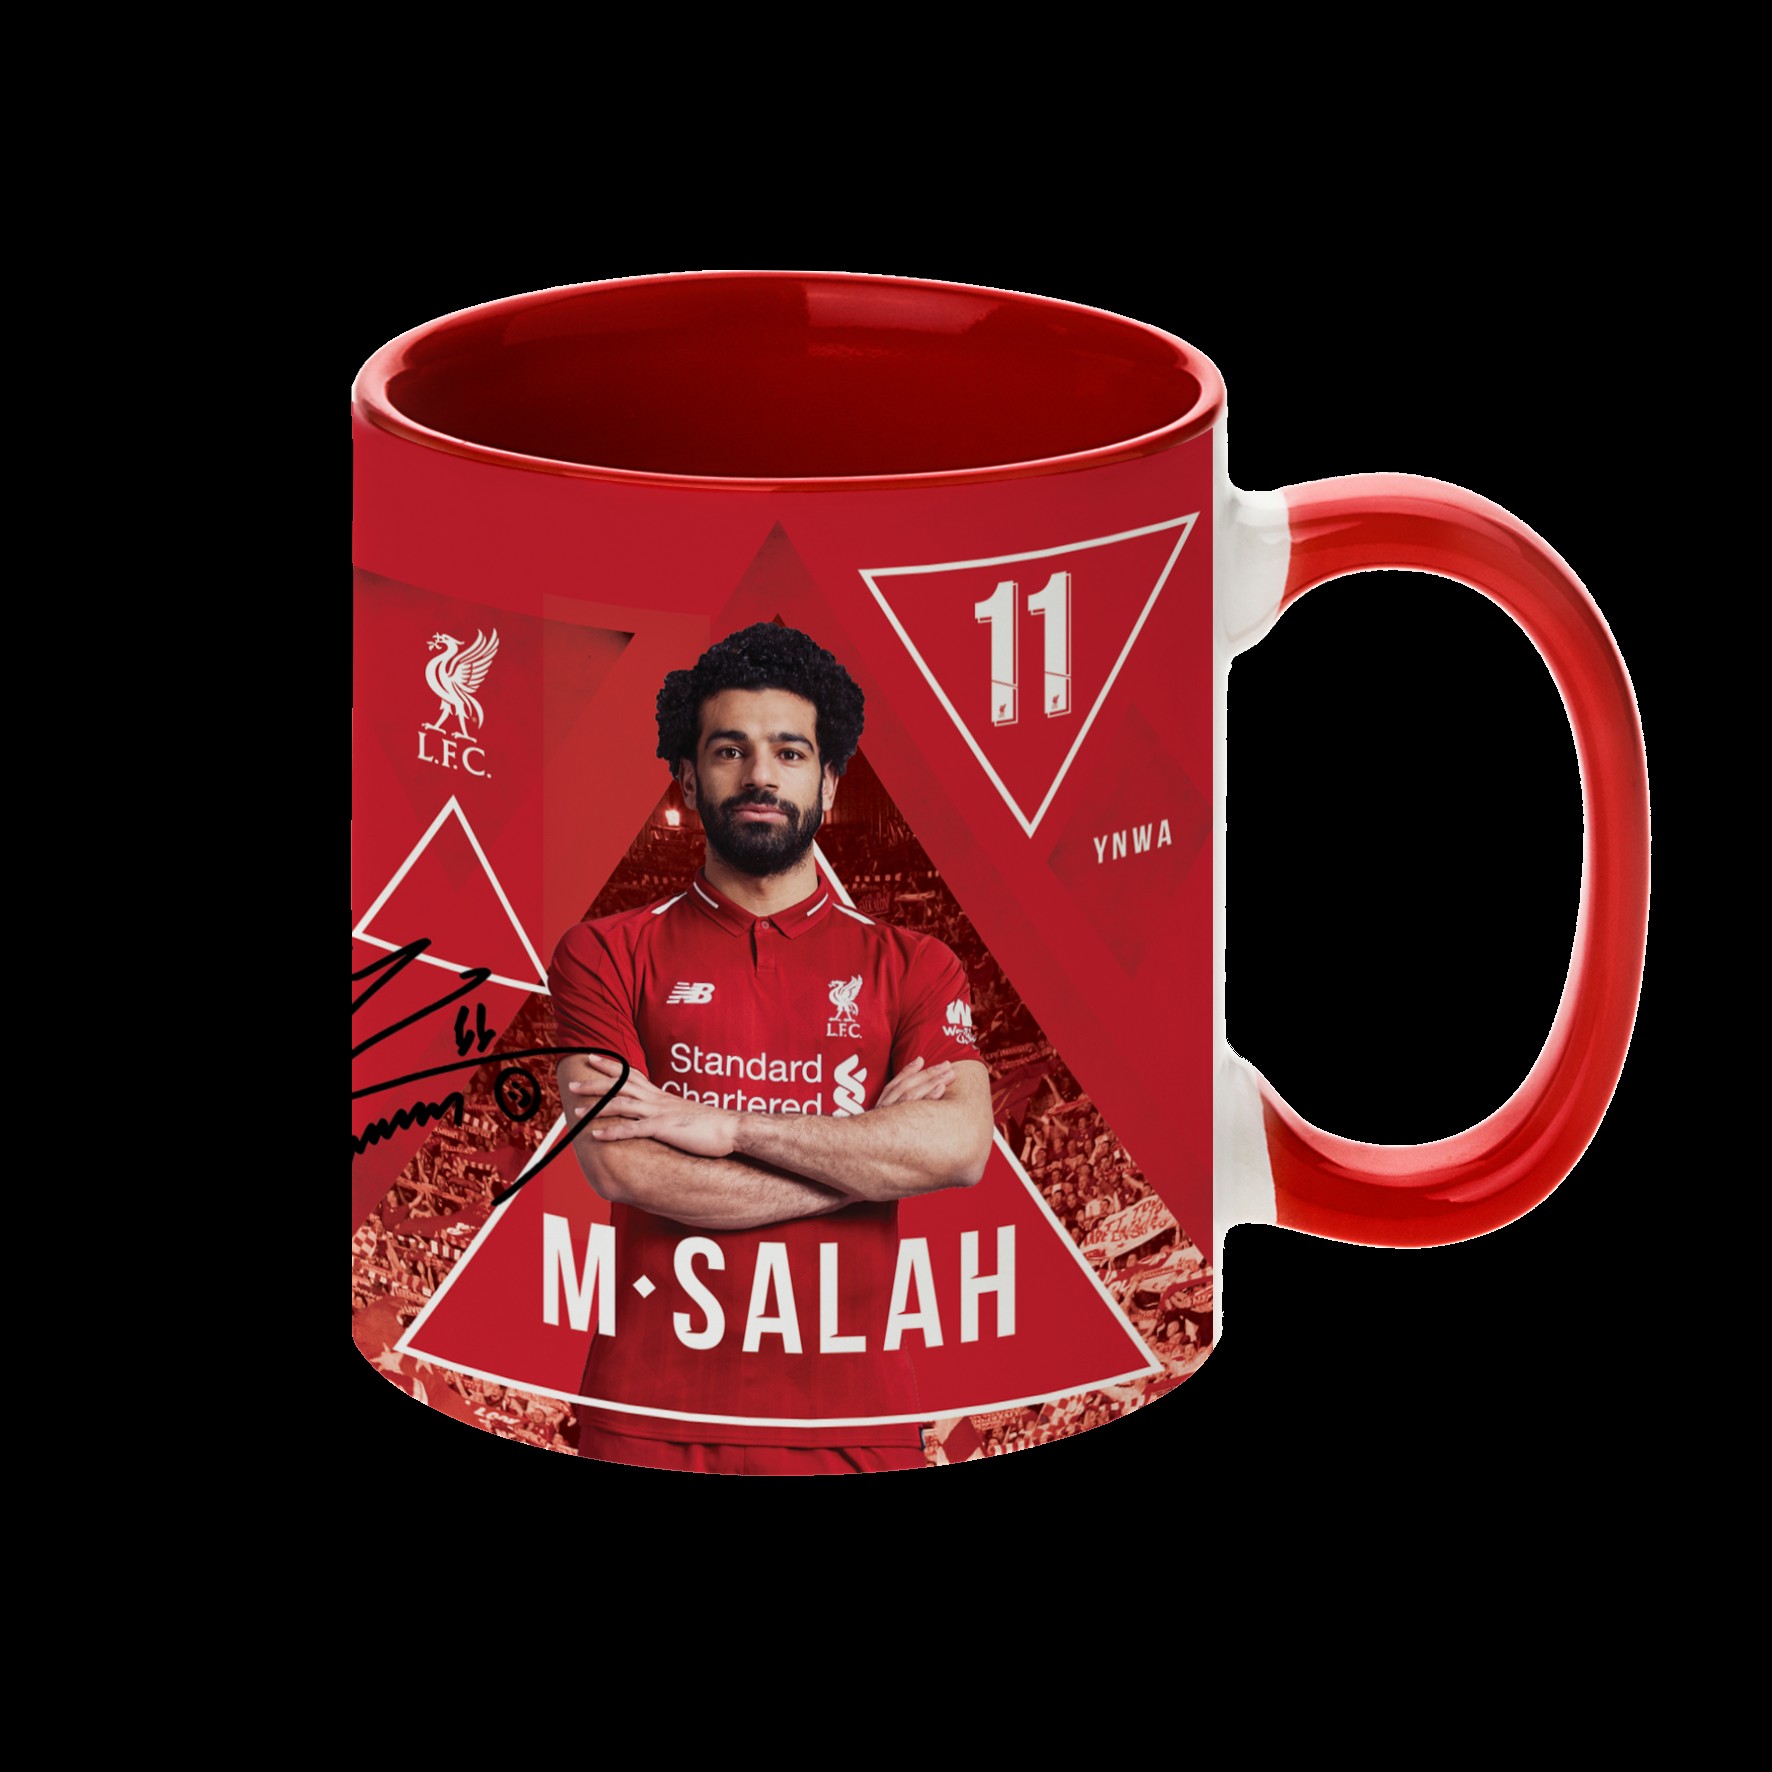 LFC Salah Mug 18/19